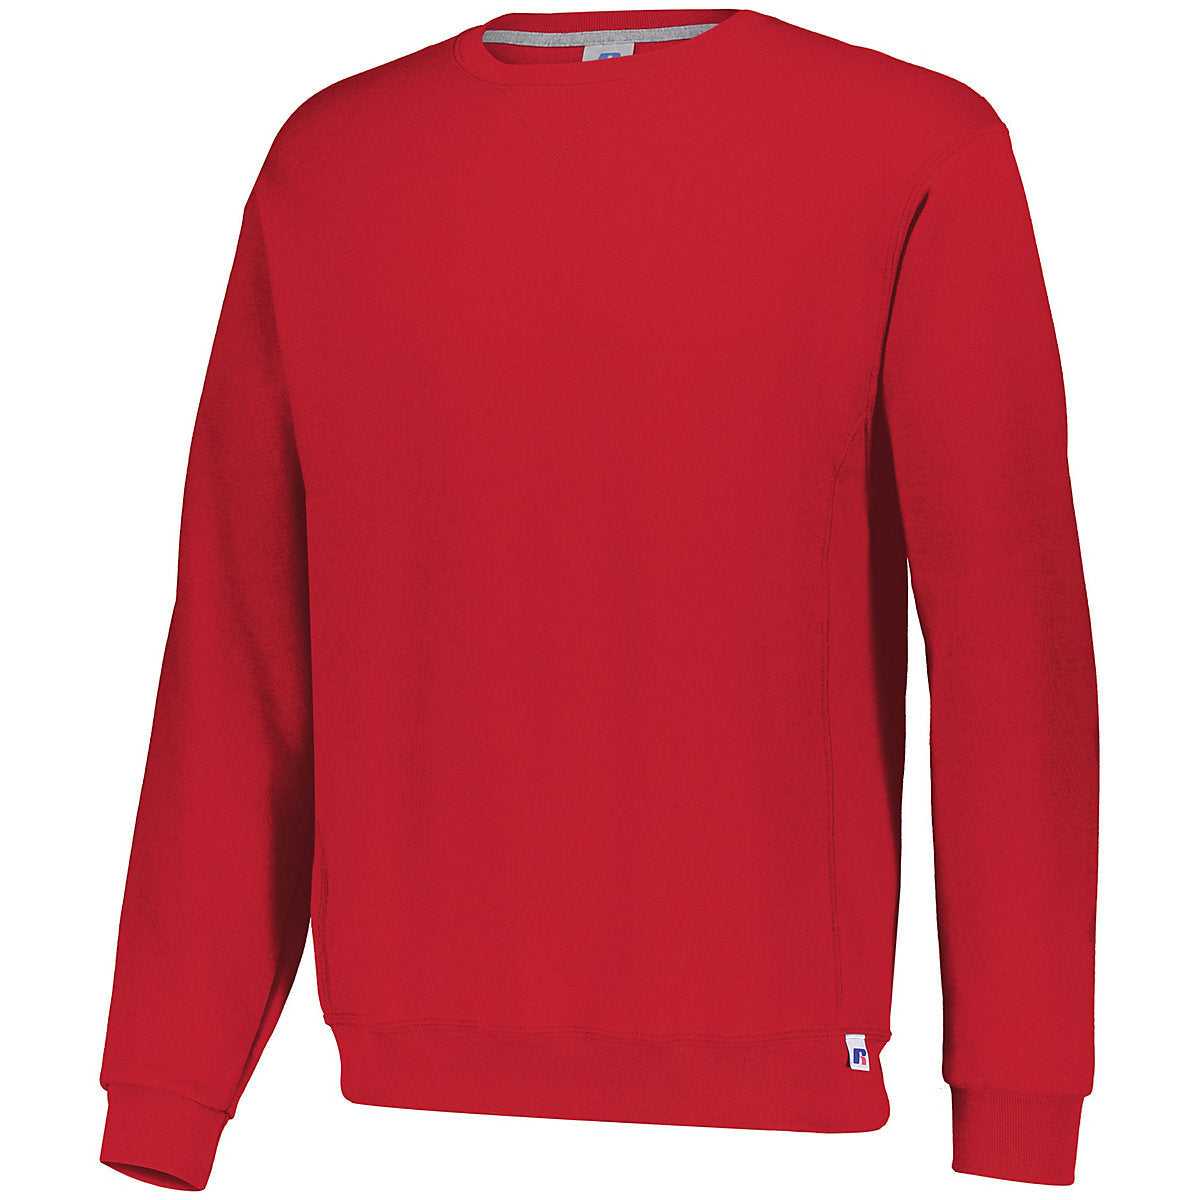 Russell 698HBM Dri-Power Fleece Crew Sweatshirt - True Red - HIT a Double